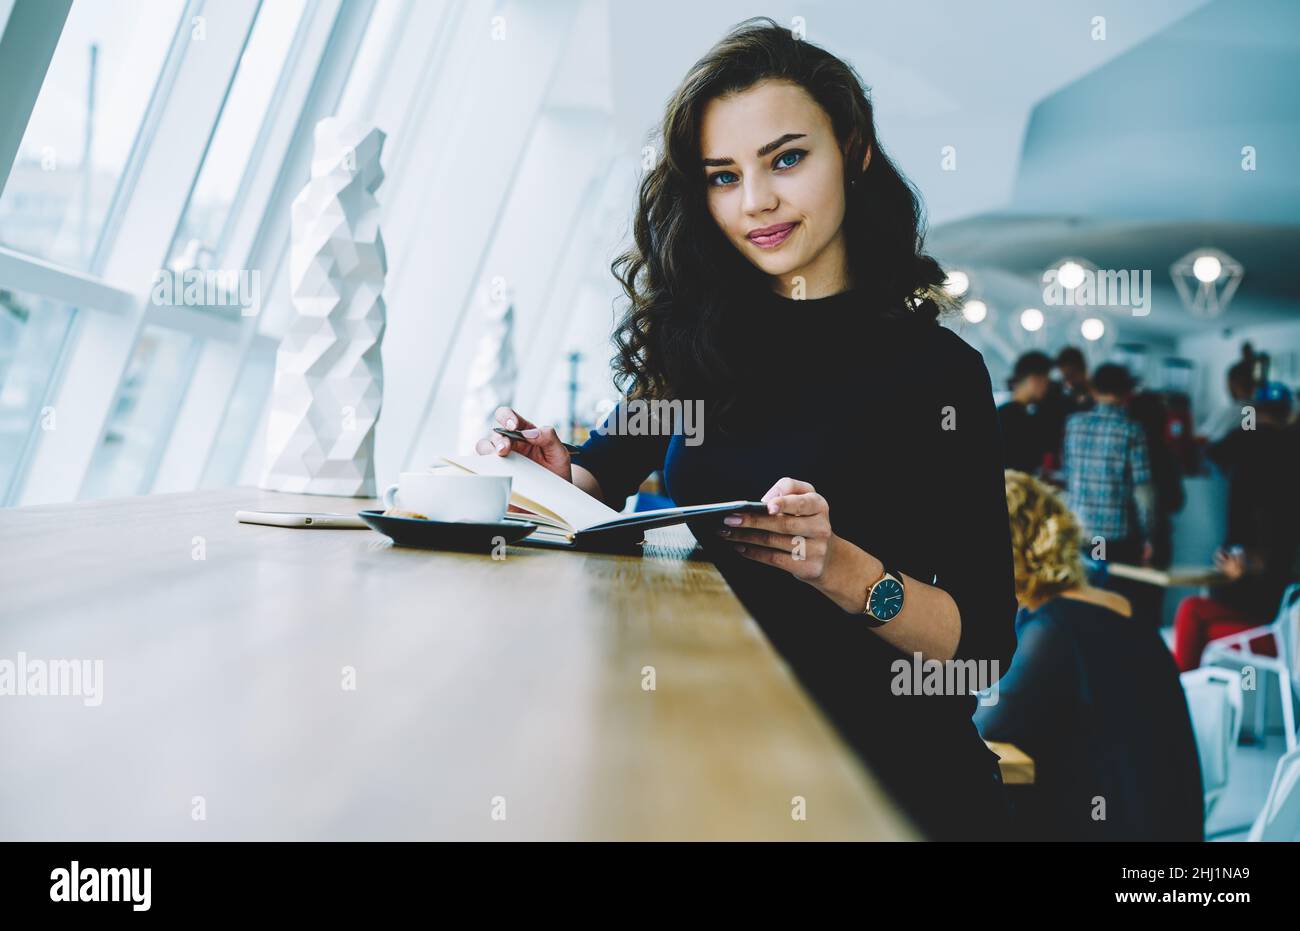 Femme souriante avec un carnet et une tasse de café Banque D'Images